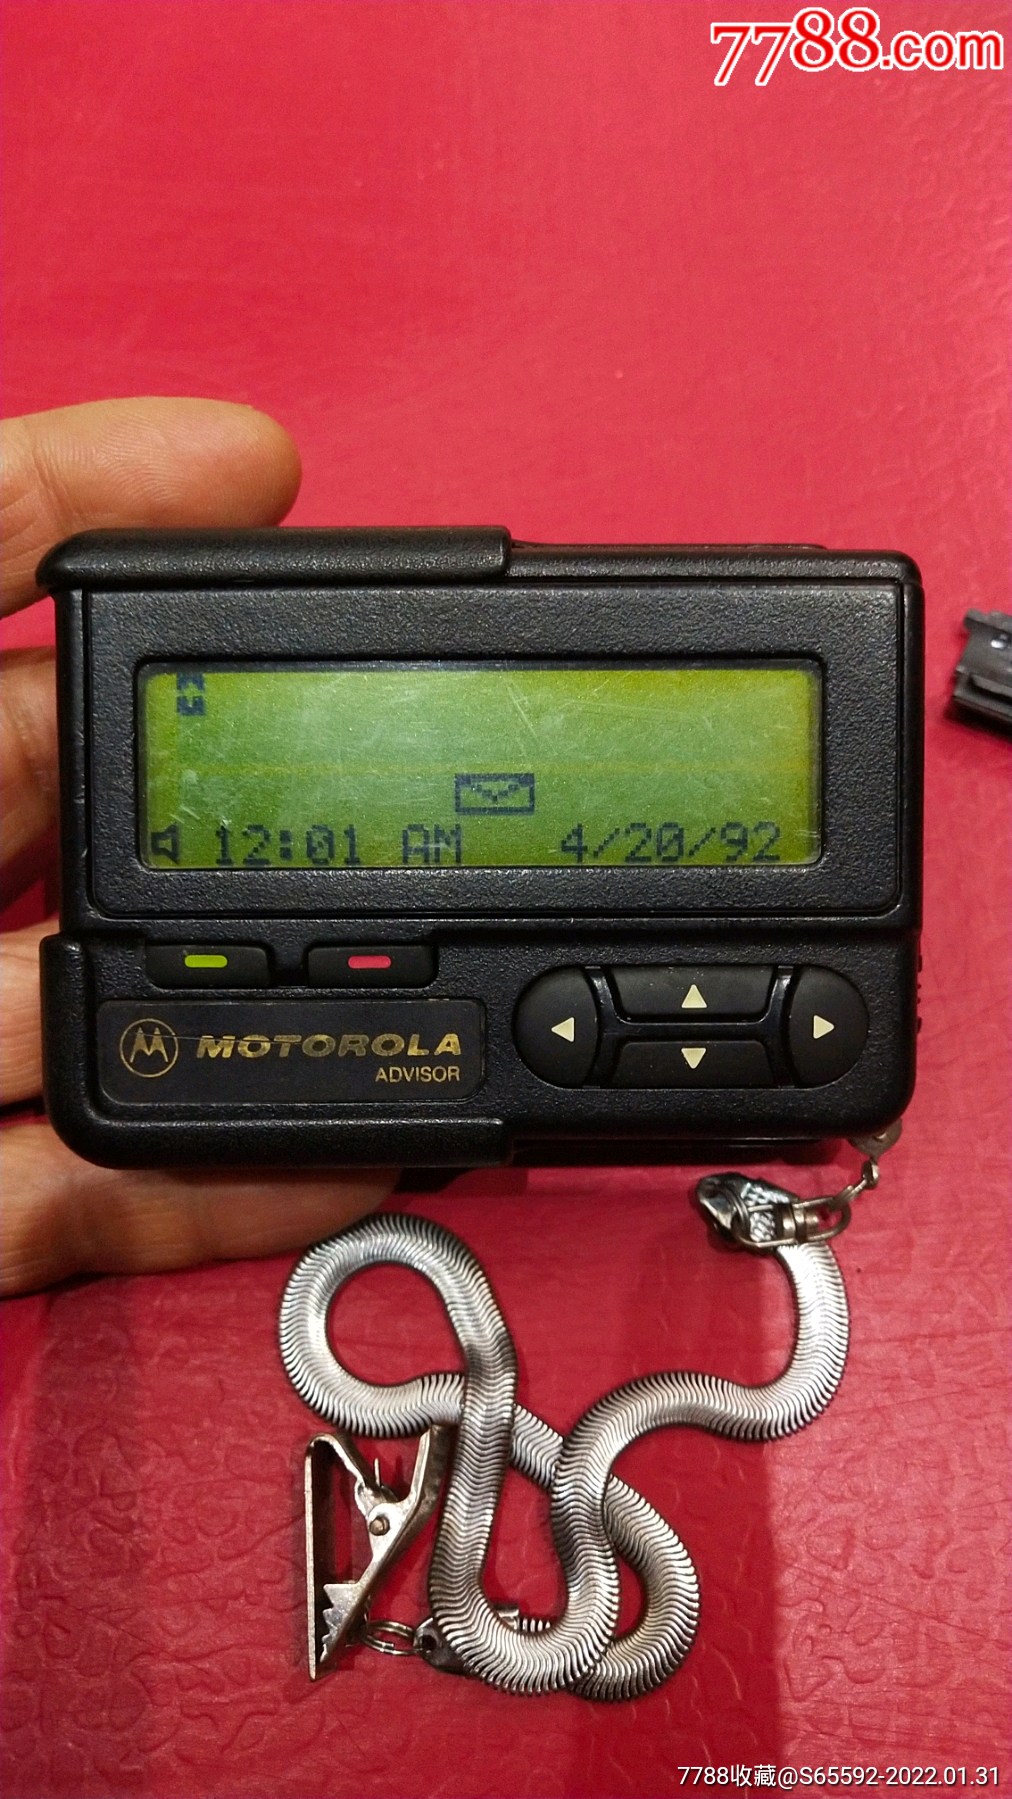 摩托罗拉bb机手表图片